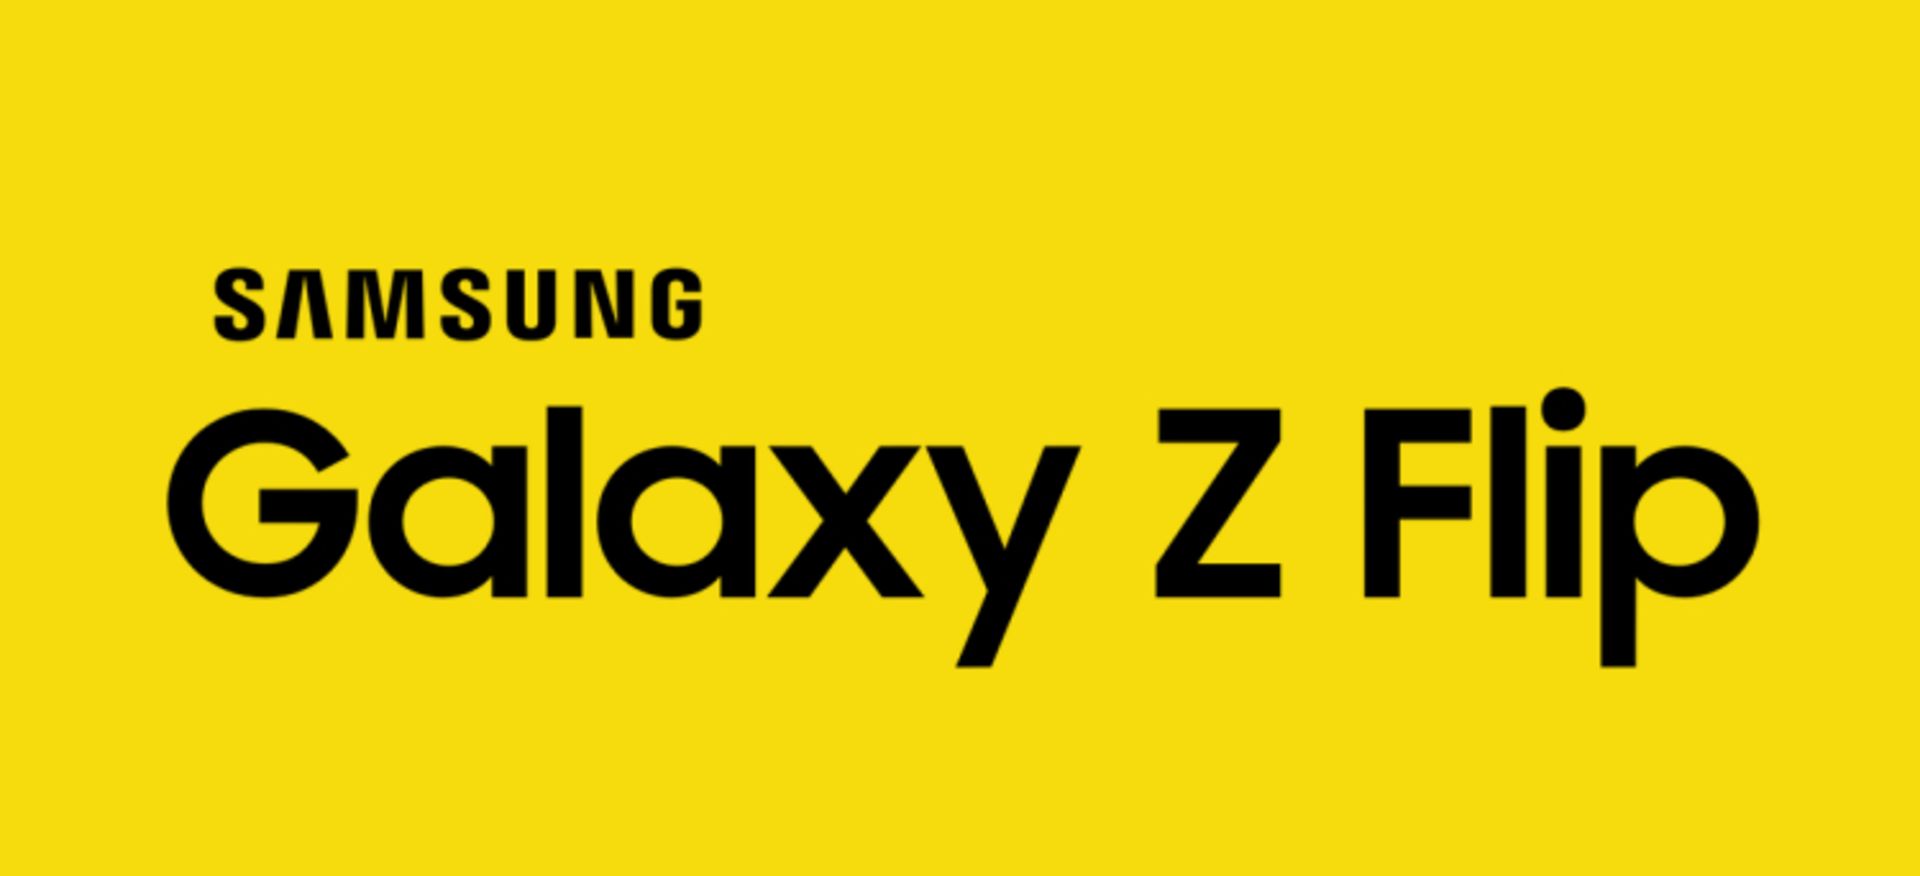 مرجع متخصصين ايران گلكسي زد فليپ سامسونگ / Samsung Galaxy Z Flip